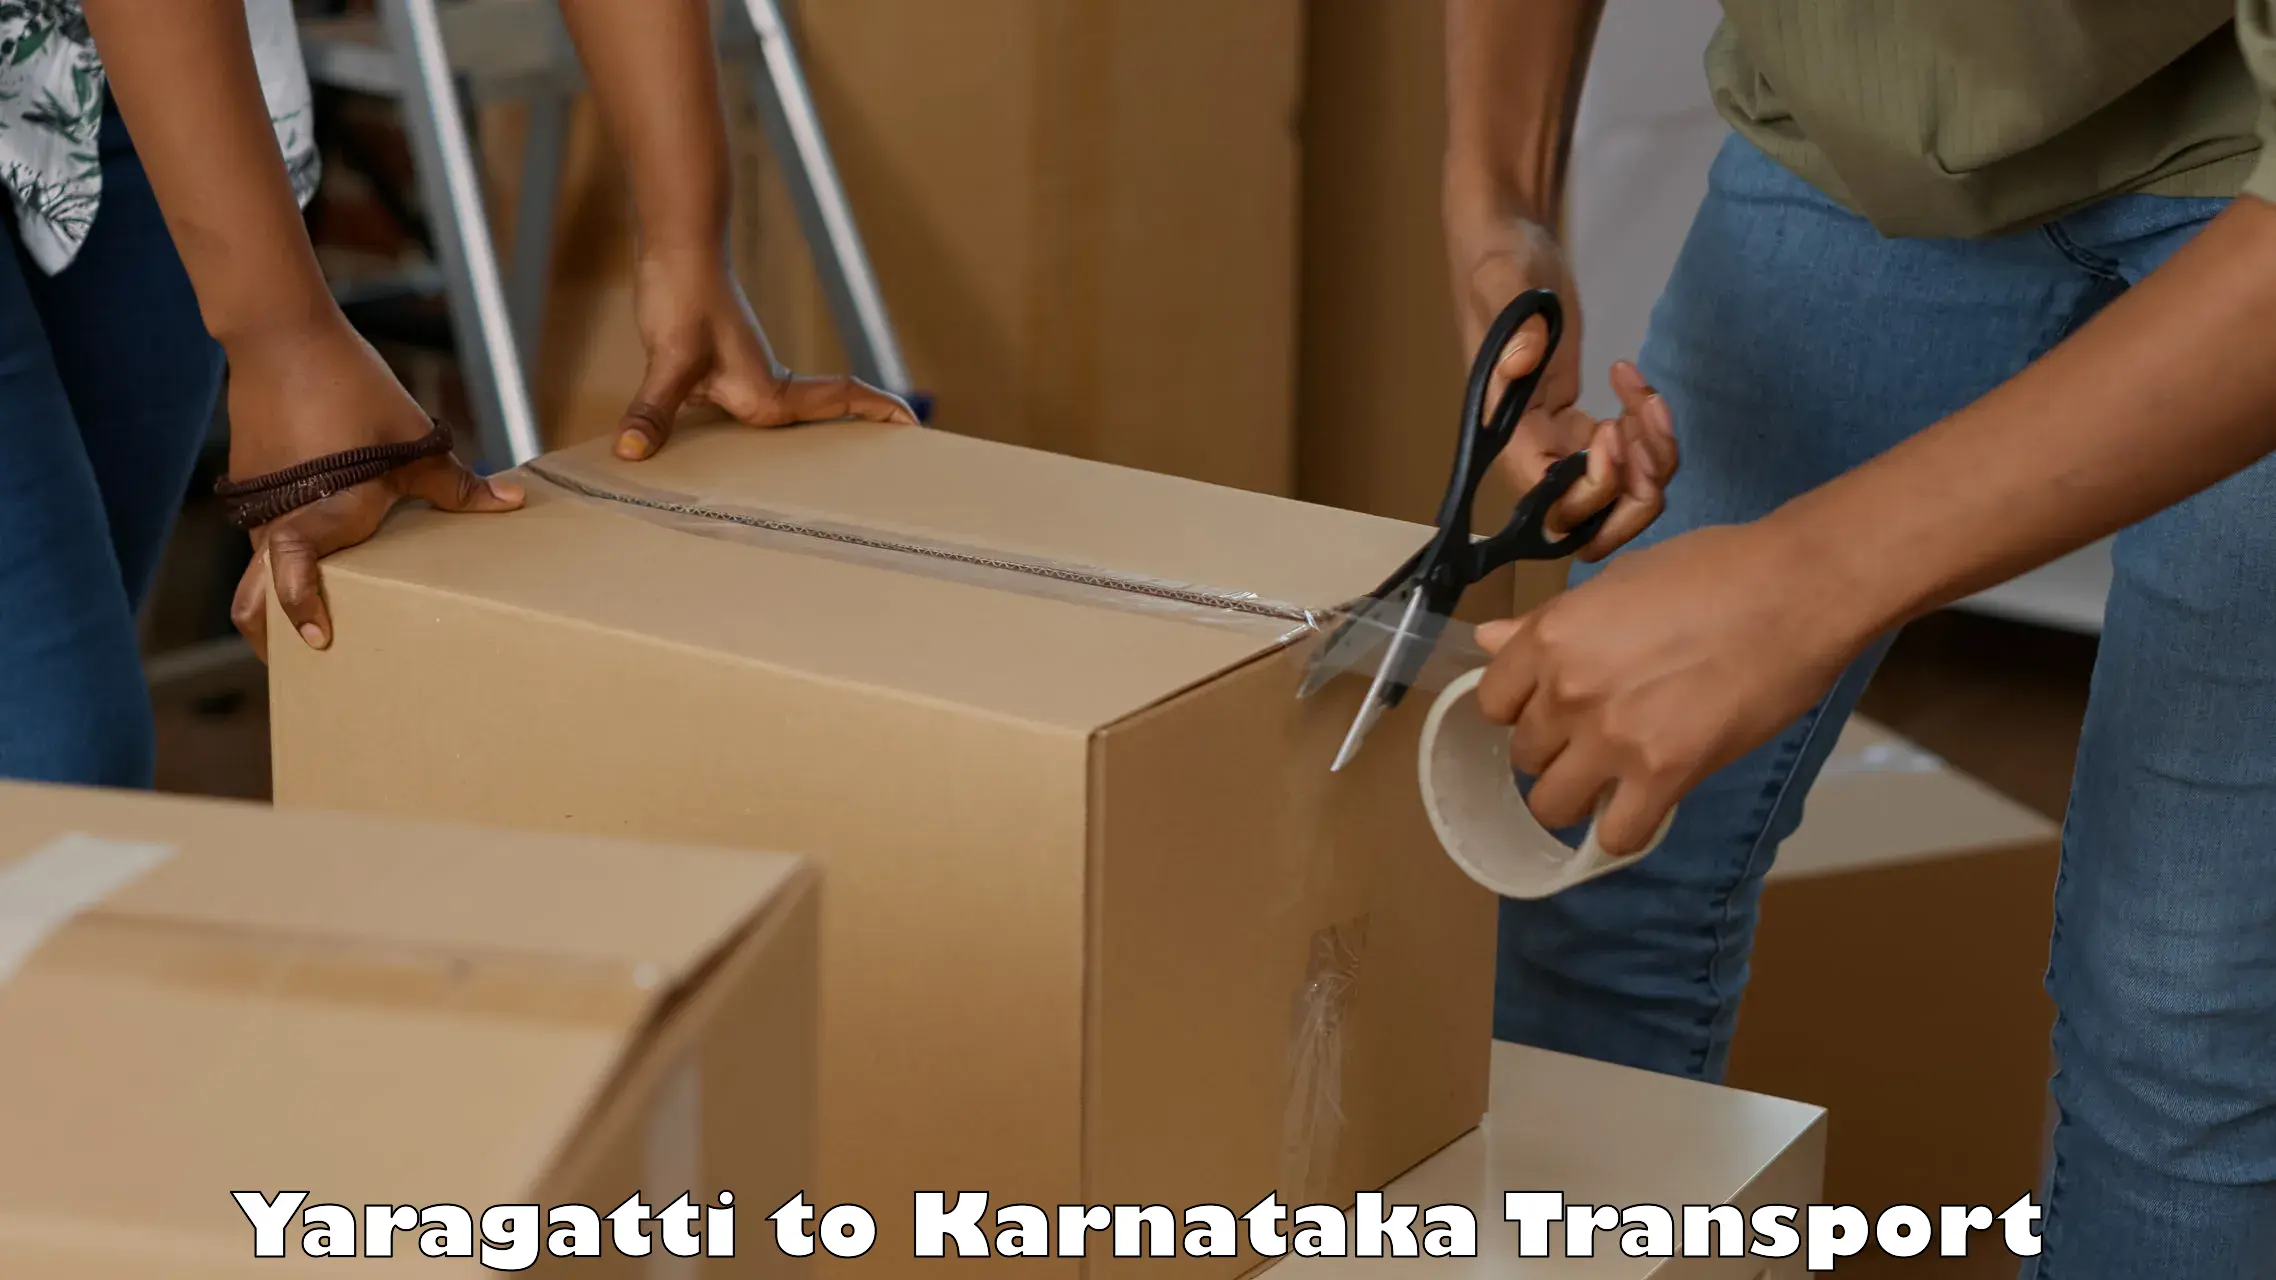 Two wheeler transport services Yaragatti to Karnataka